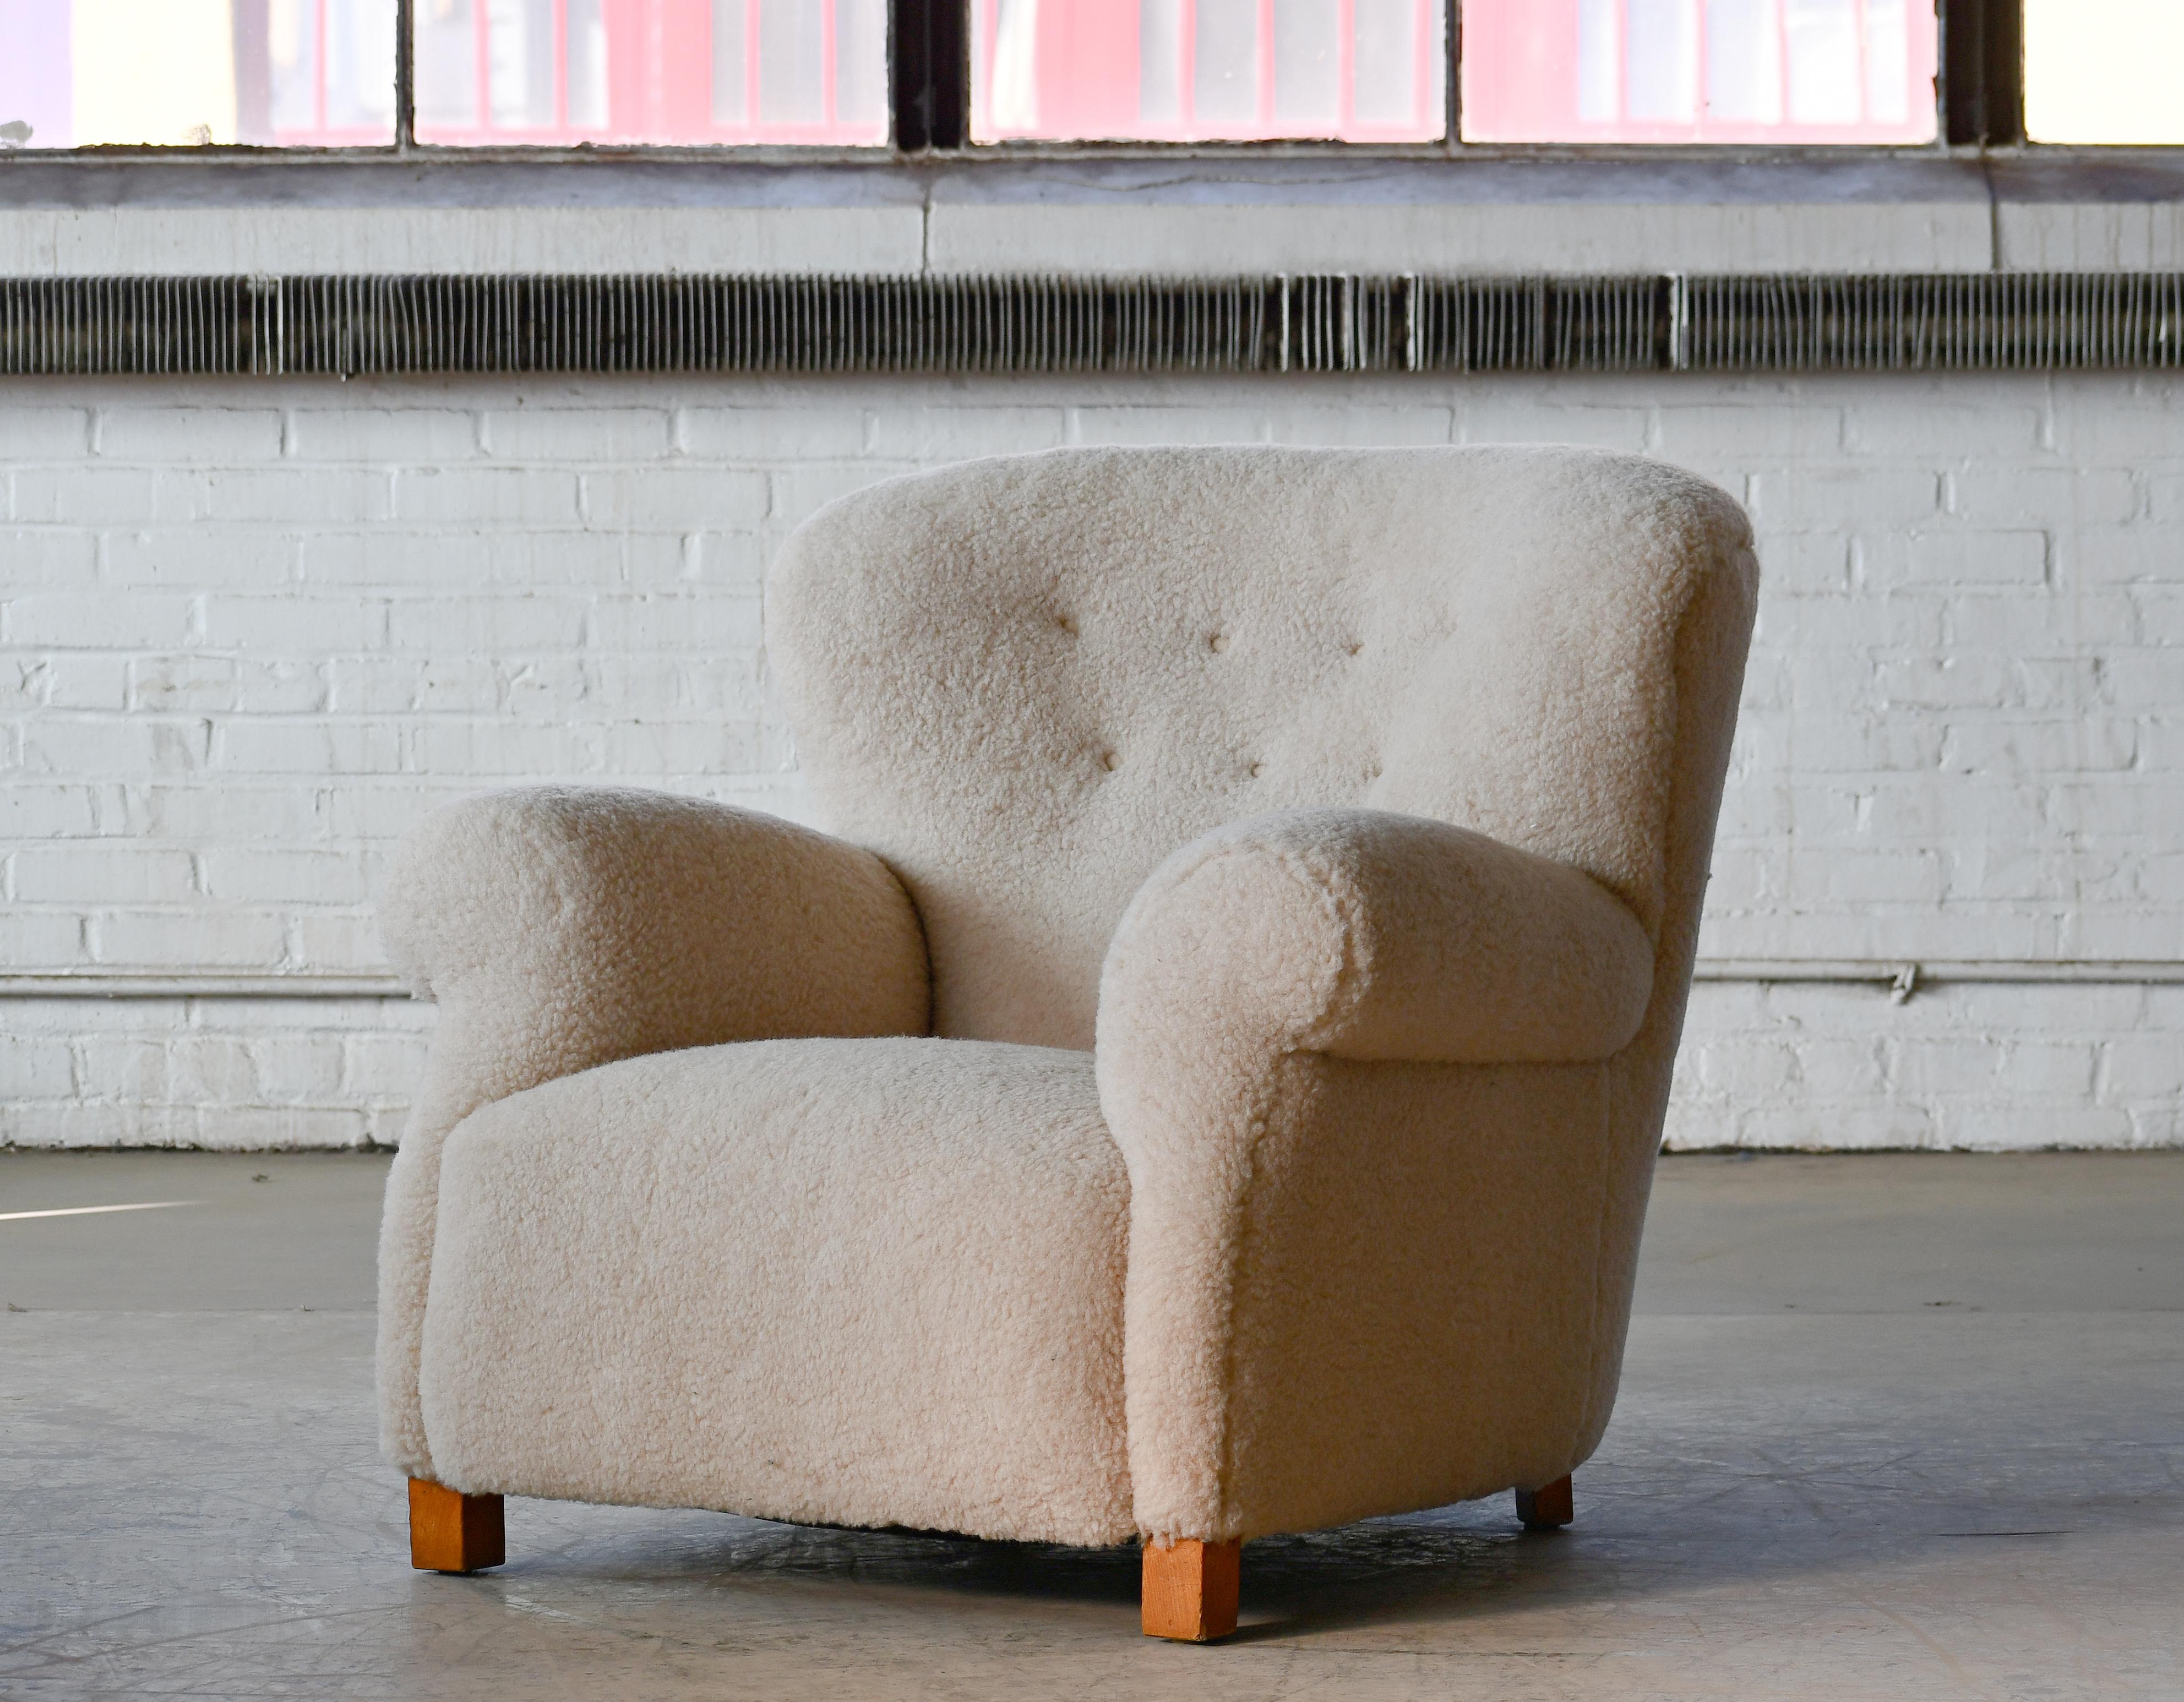 Sublime großen Maßstab Modell 1518 Lounge-Club-Sessel von Fritz Hansen in den späten 1930er oder frühen 1940er Jahren gemacht. Die dramatischen Proportionen sind niedrig und breit. Glatte, getuftete Rückenlehne. Der Stuhl ist sehr bequem und hat